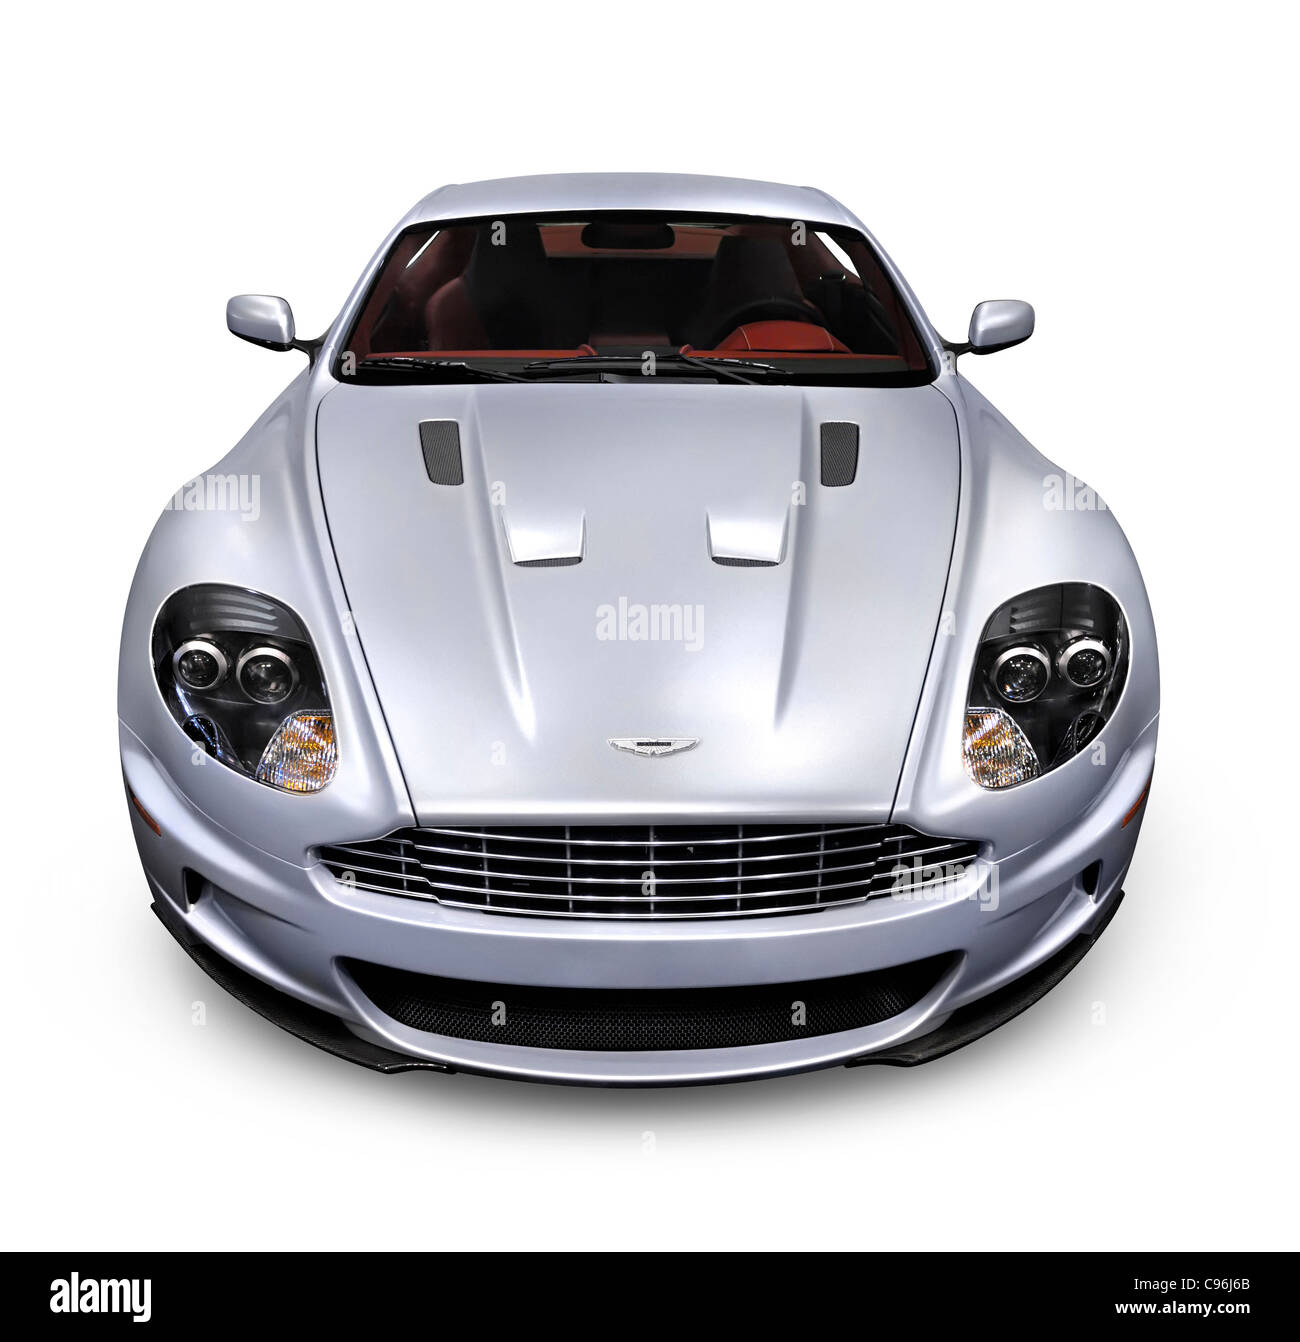 Lizenz und Drucke bei MaximImages.com - Aston Martin Luxus-Sportwagen, Automobil Stock Foto. Stockfoto